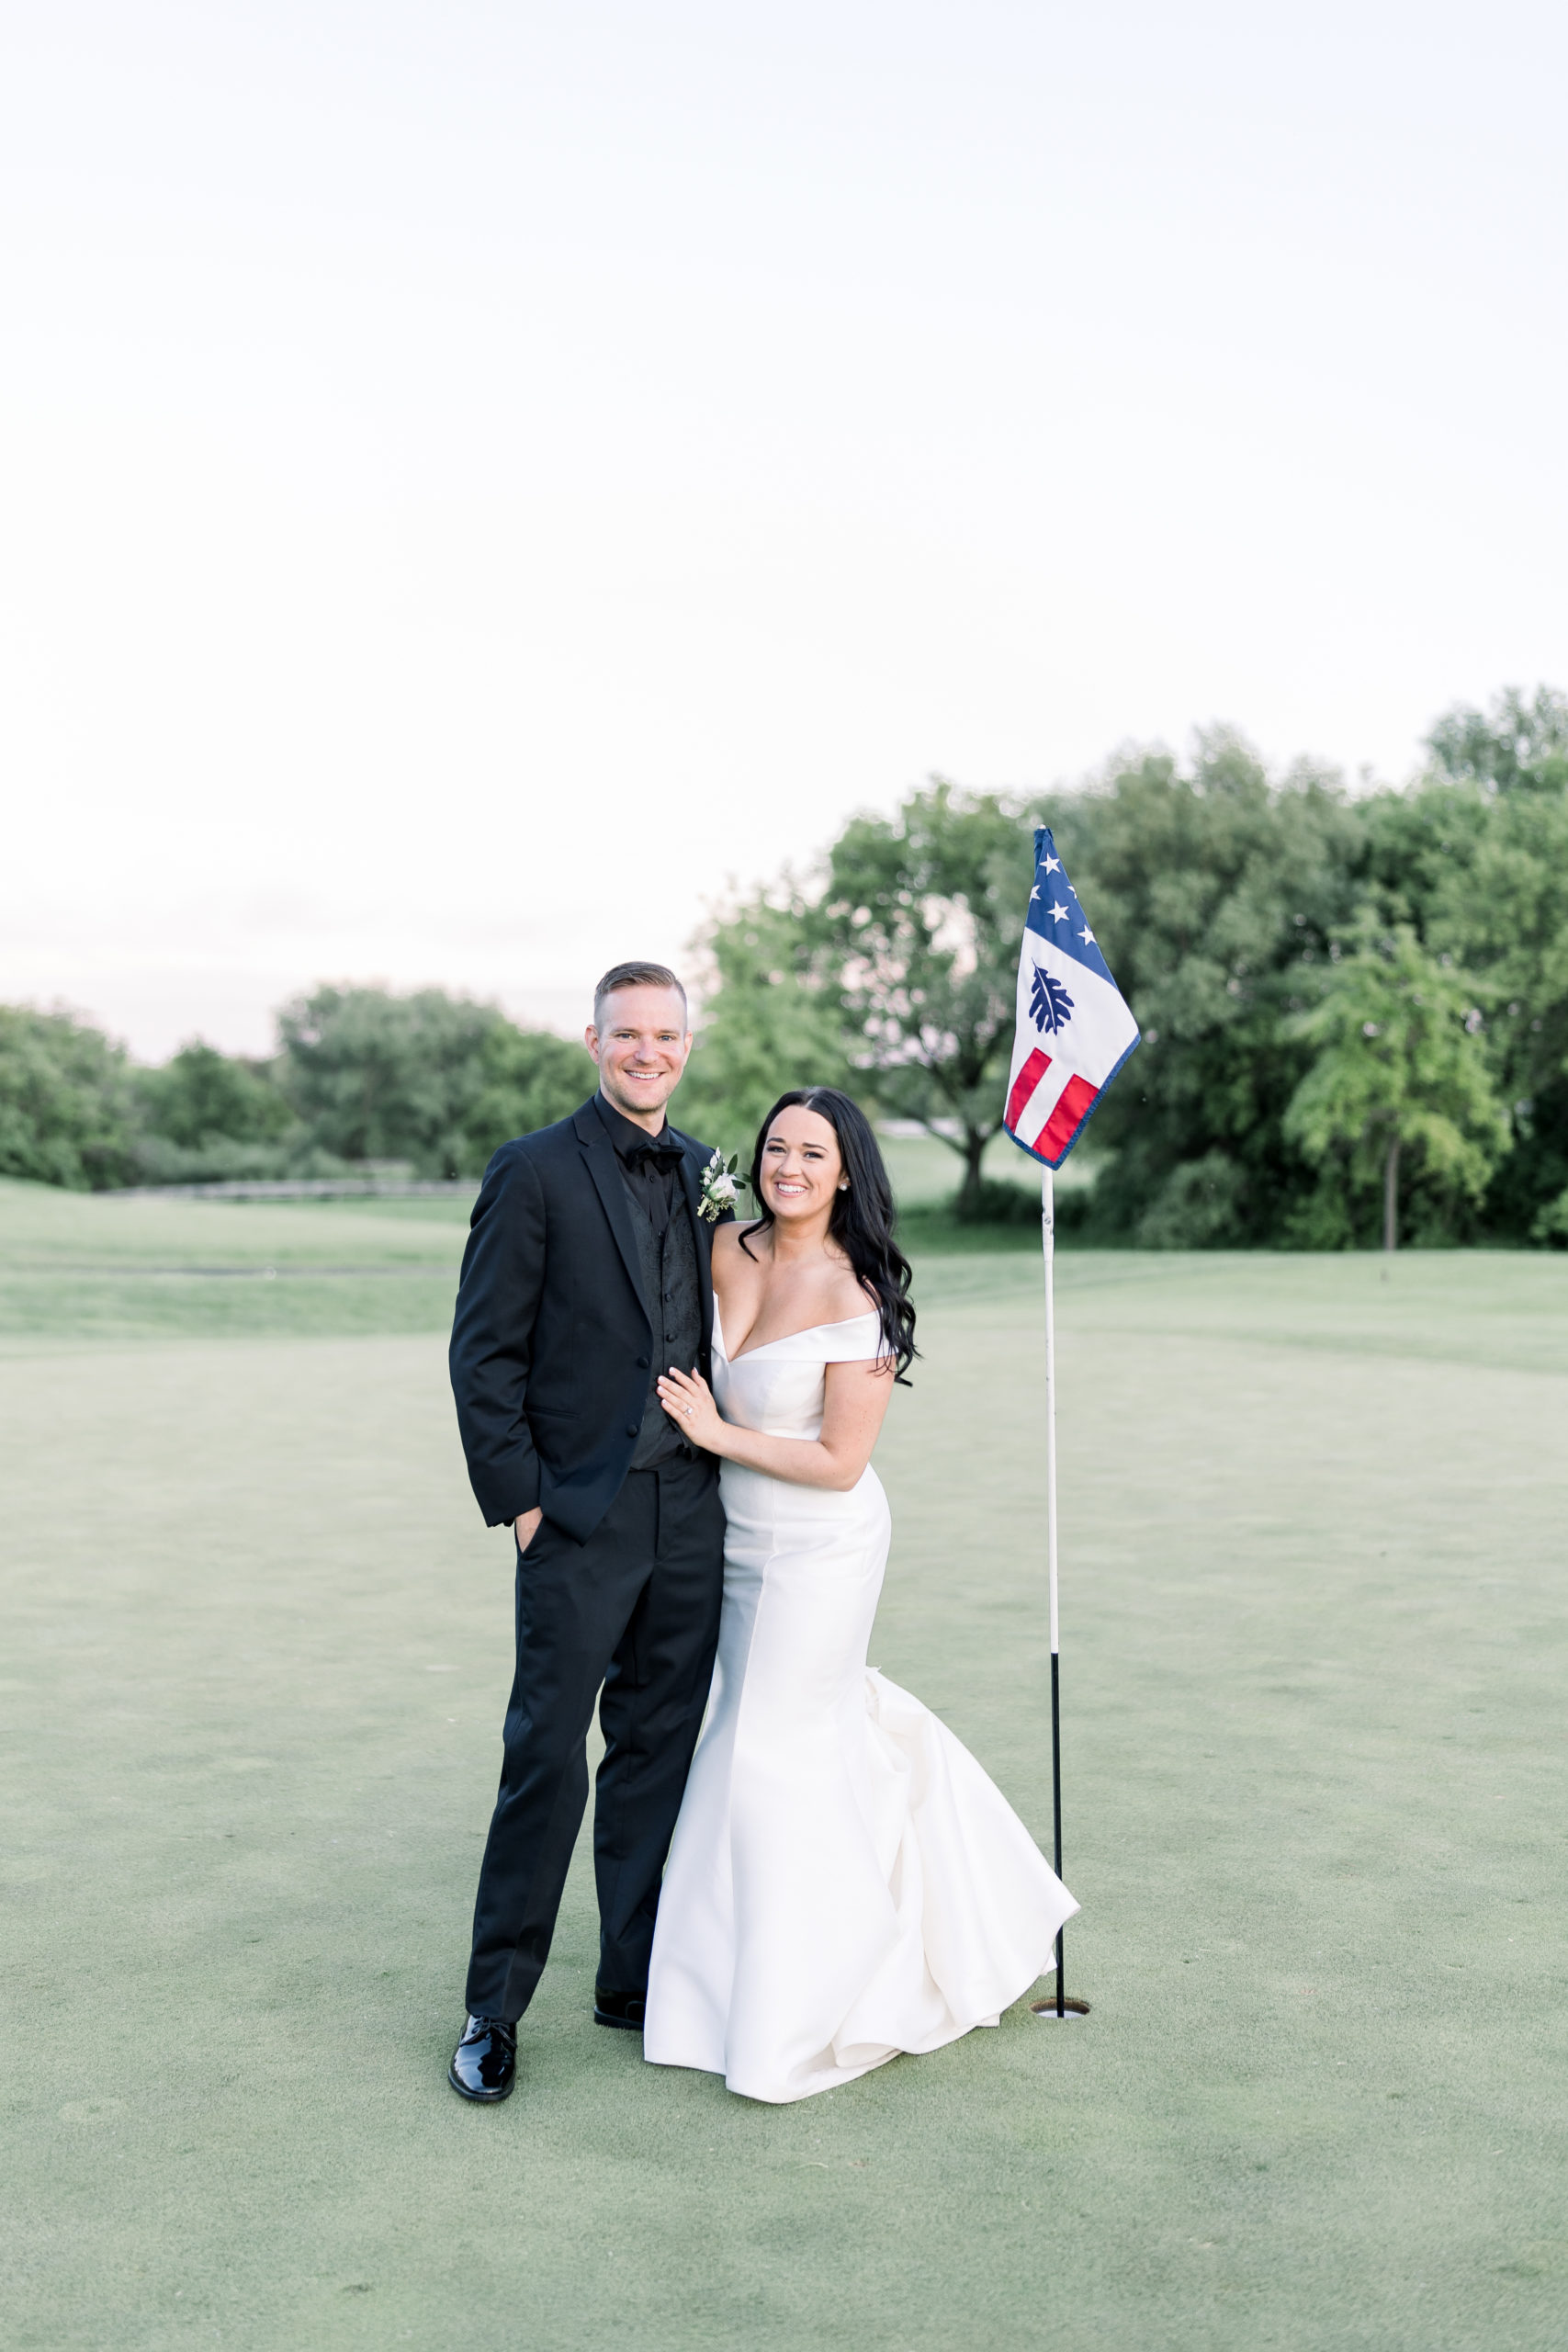 Golf Course Wedding - The Oaks